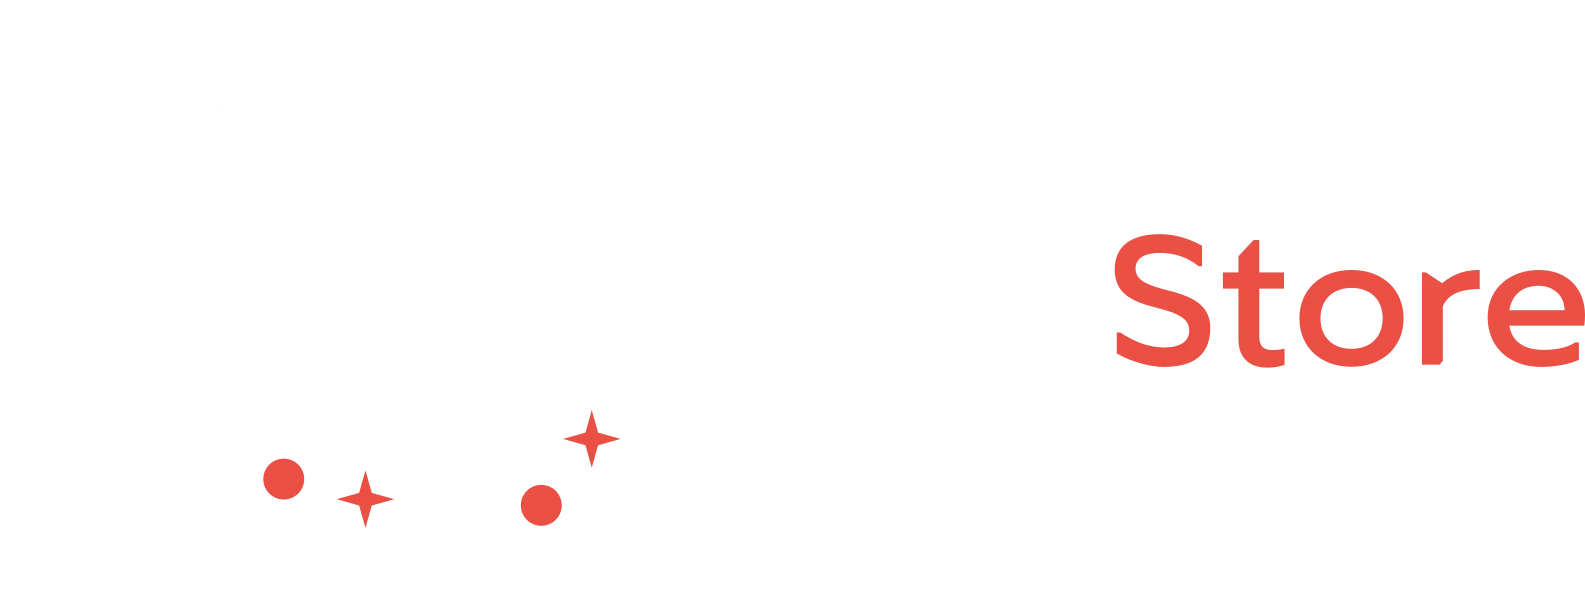 Investore logo